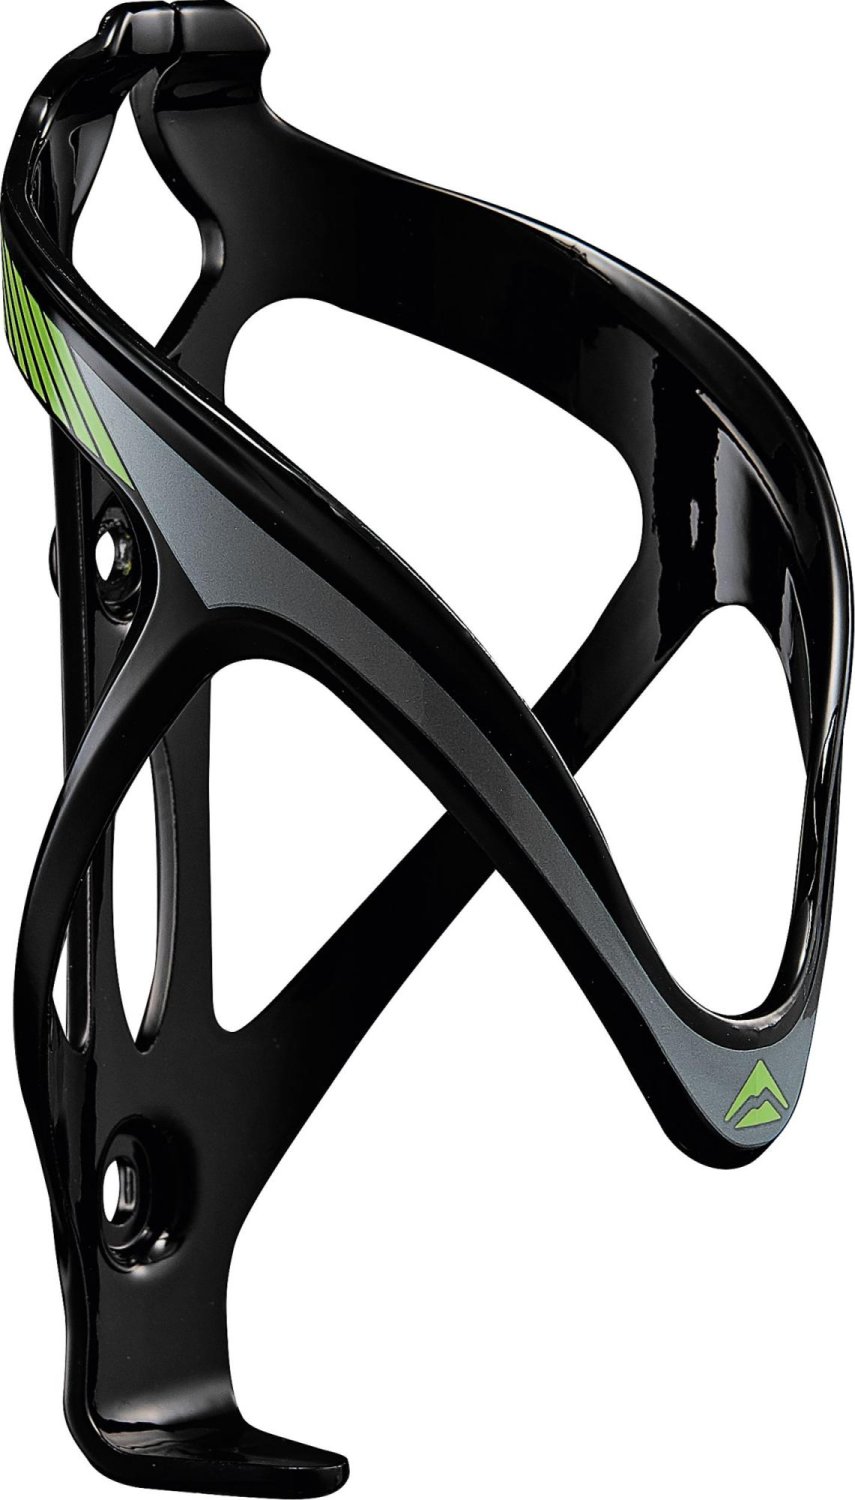 Флягодержатель велосипедный Merida, Plastic, 30гр. Black/Green/Grey, 2124003397 флягодержатель велосипедный bbb speedcage серый алюминий bbc 31